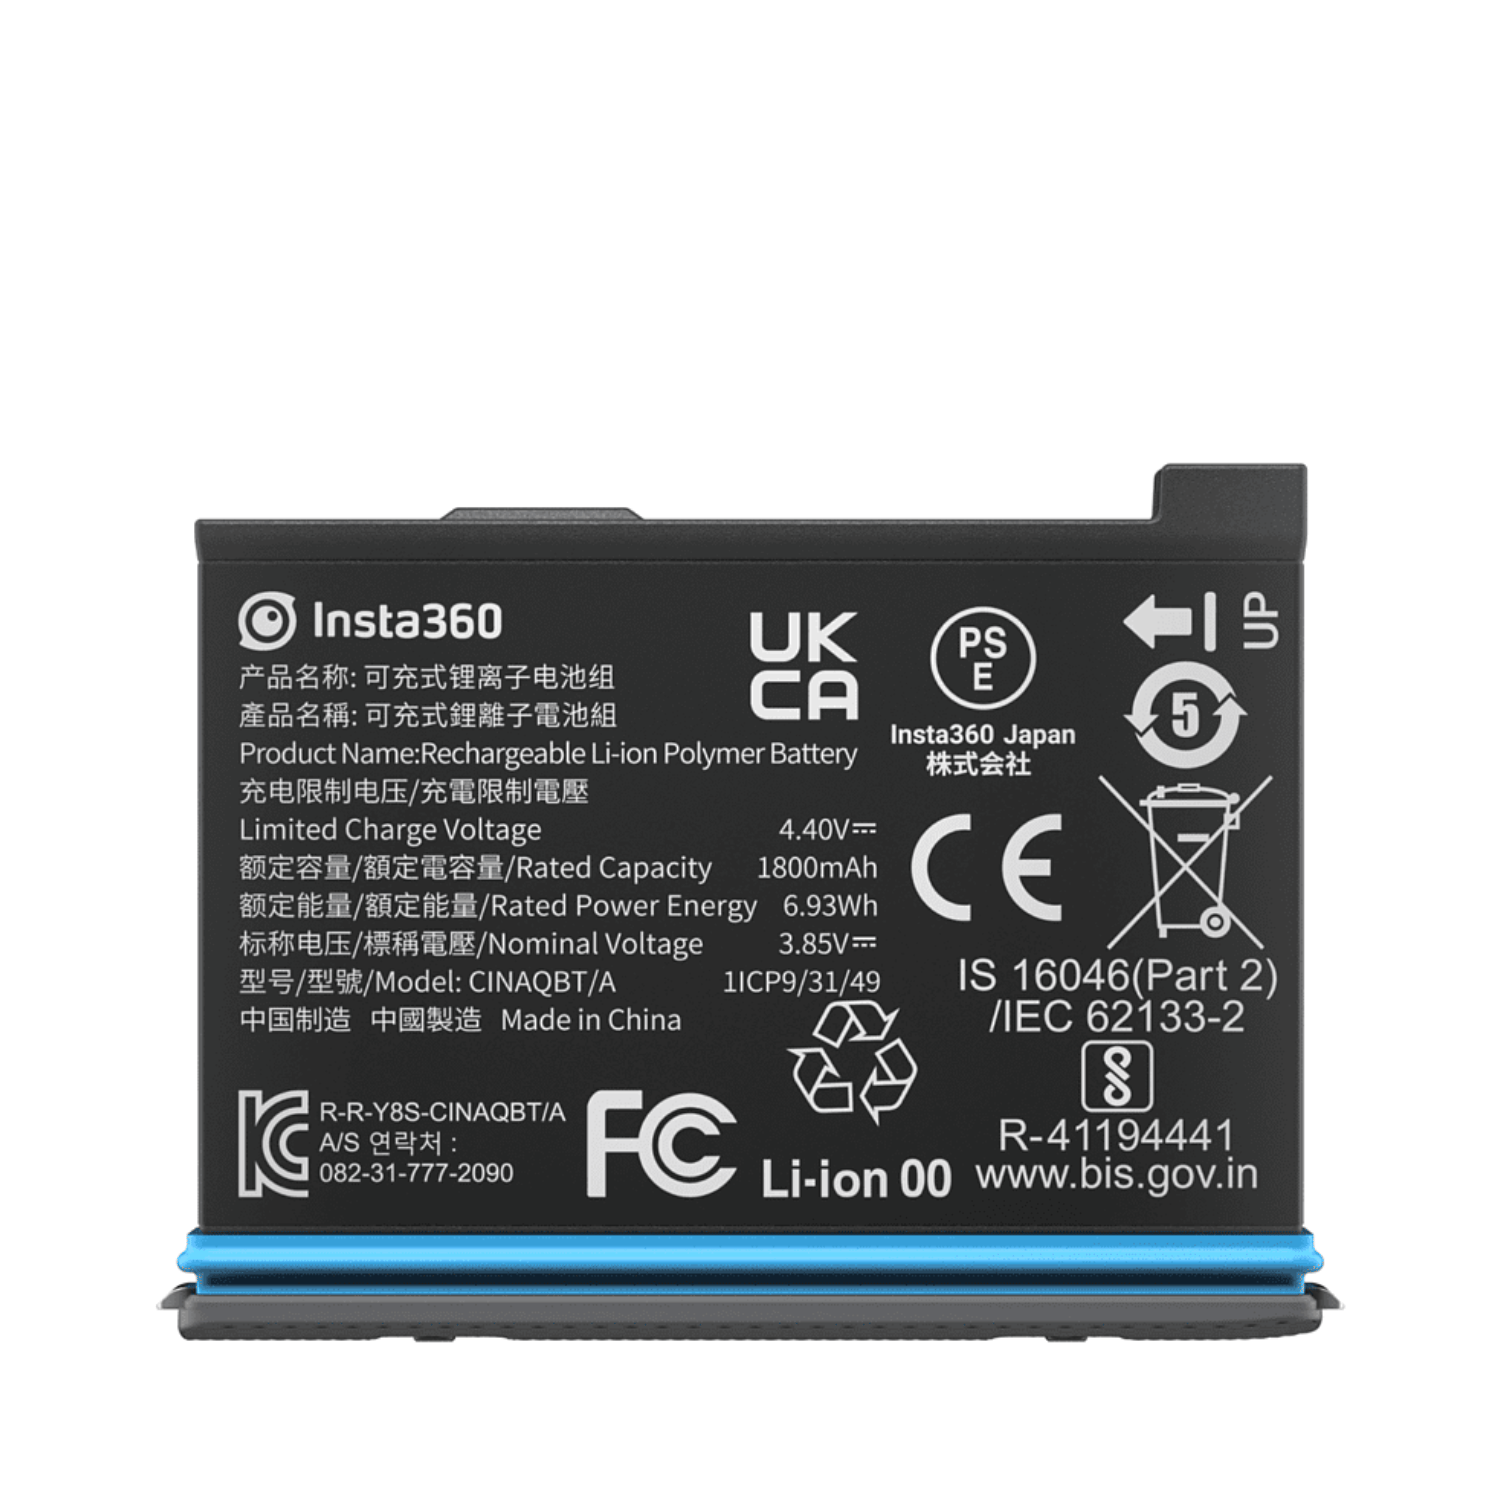 Insta360 x3 Battery - Cinesud è da 47 anni nel mercato! 935270